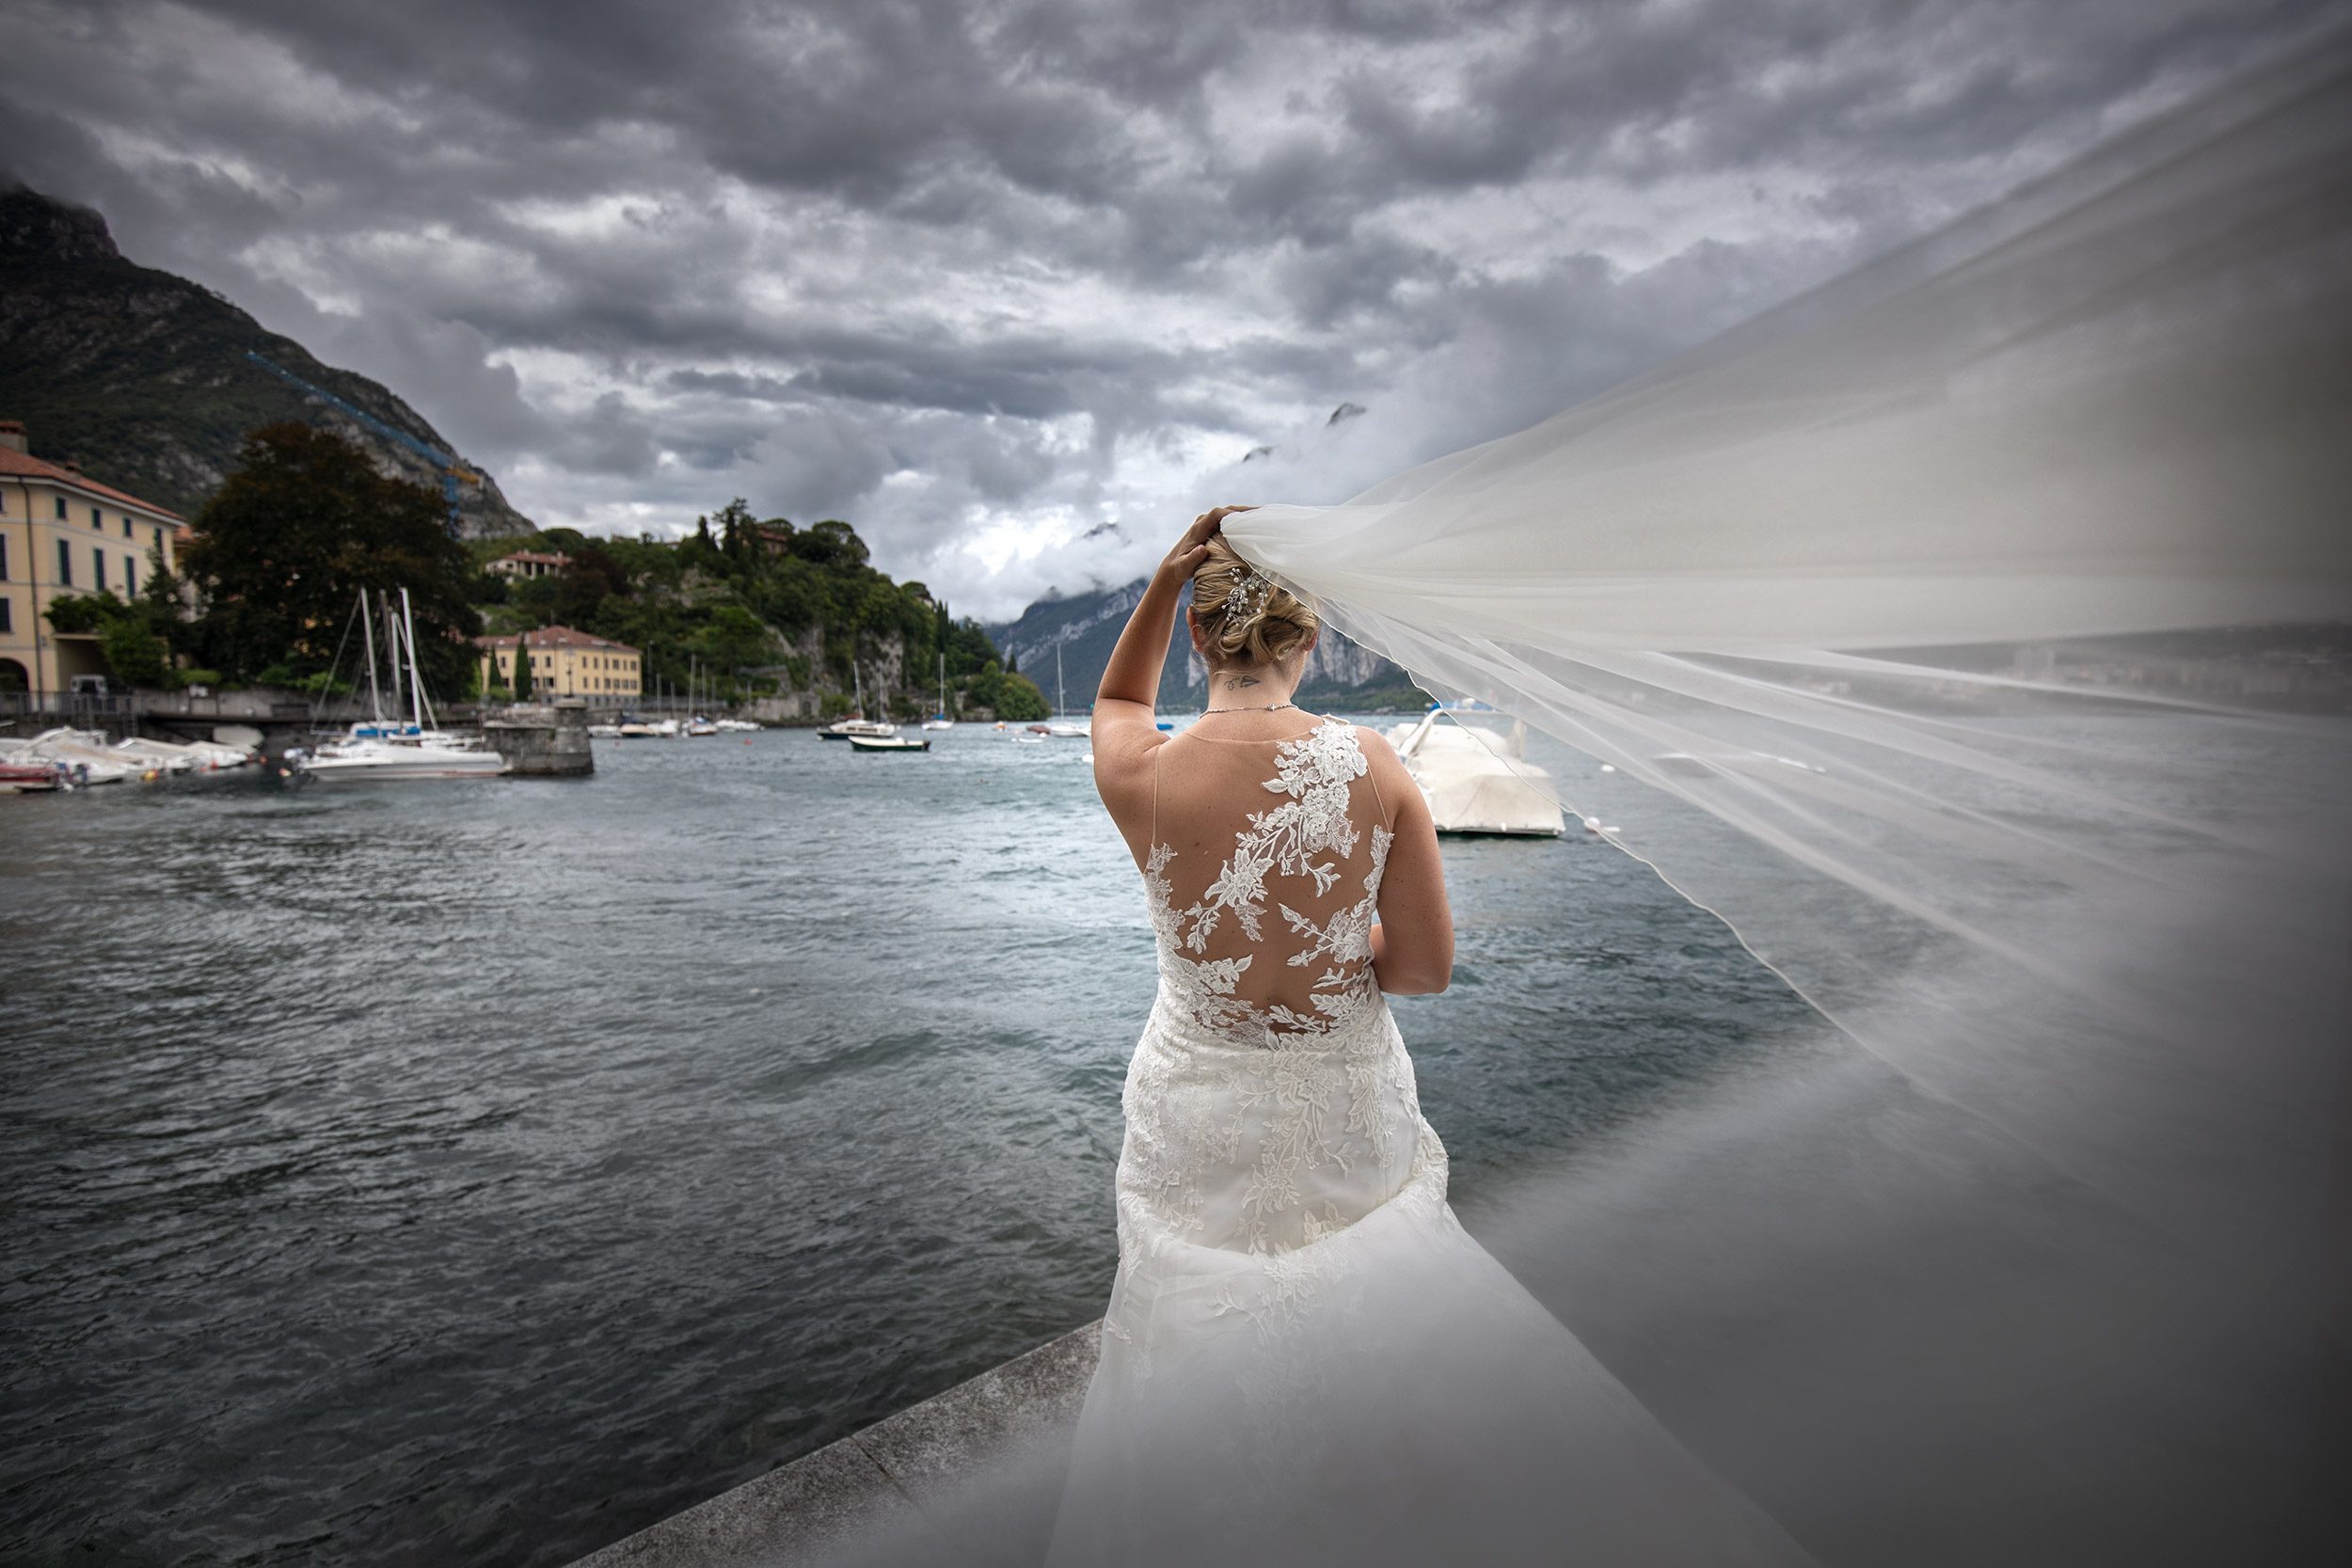 000 reportage sposi foto matrimonio wedding lungolago lago como malgrate lecco copia 1